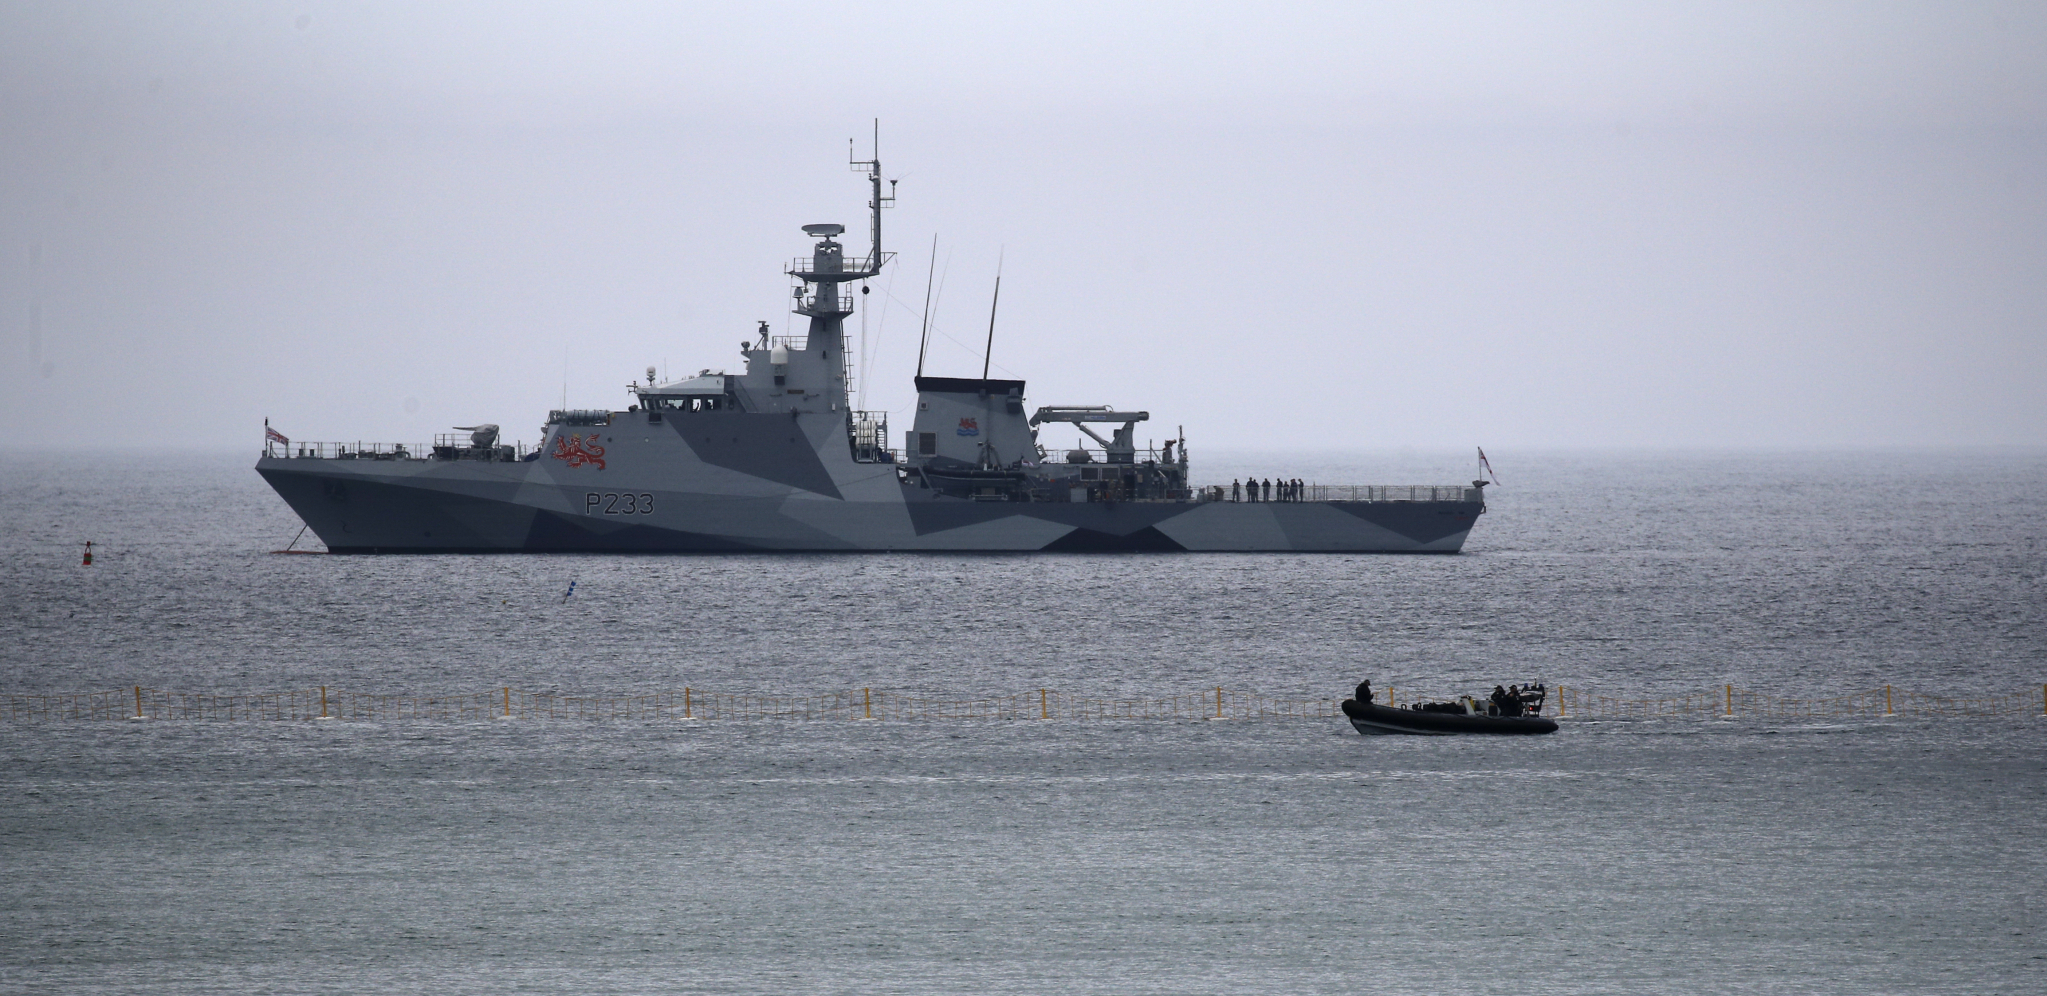 SUMNJIVI ČAMAC I TAJNA PREGRADA Britanska mornarica "upecala" 15 miliona funti u Arabijskom moru